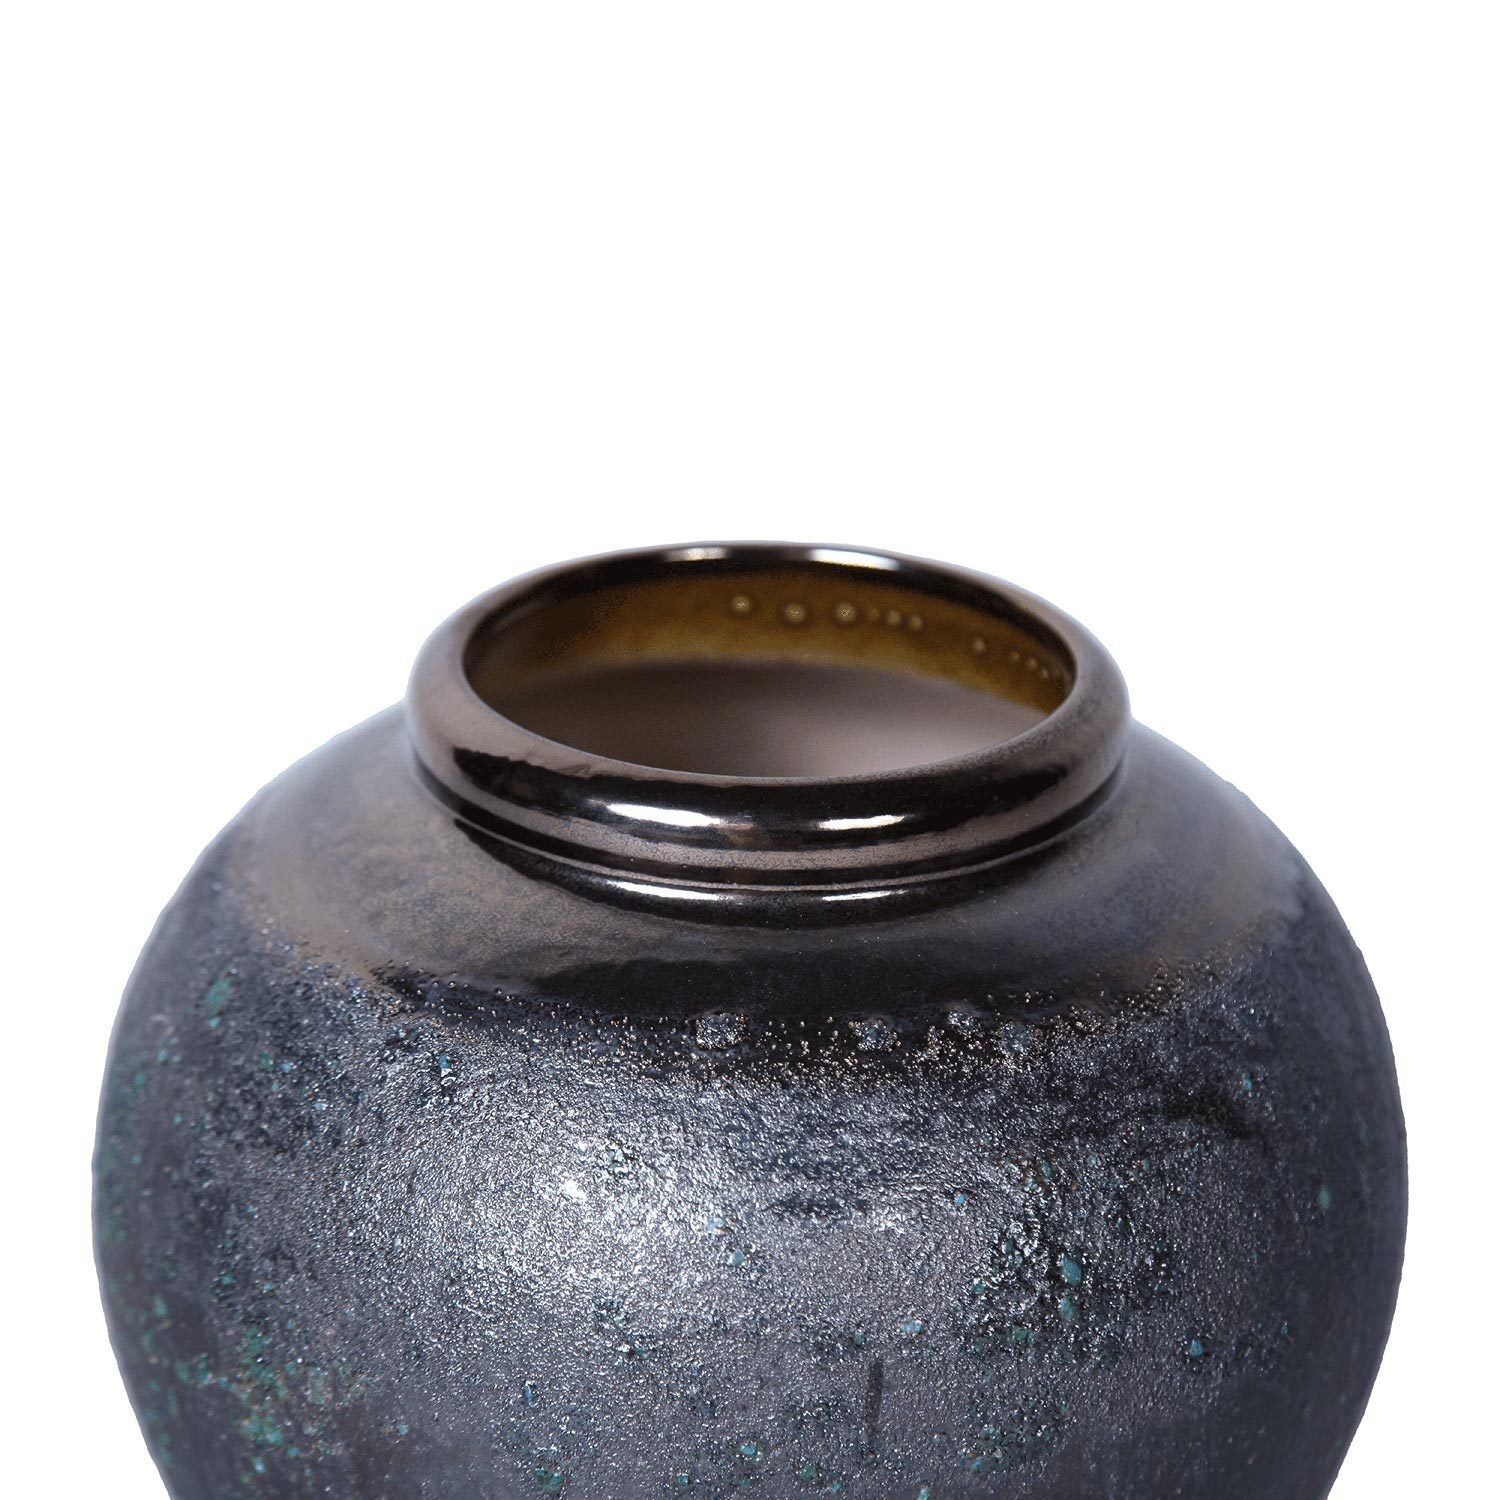 Artisanal Vintage Smoke Ceramic Vase 8.7"D x 8.7"H